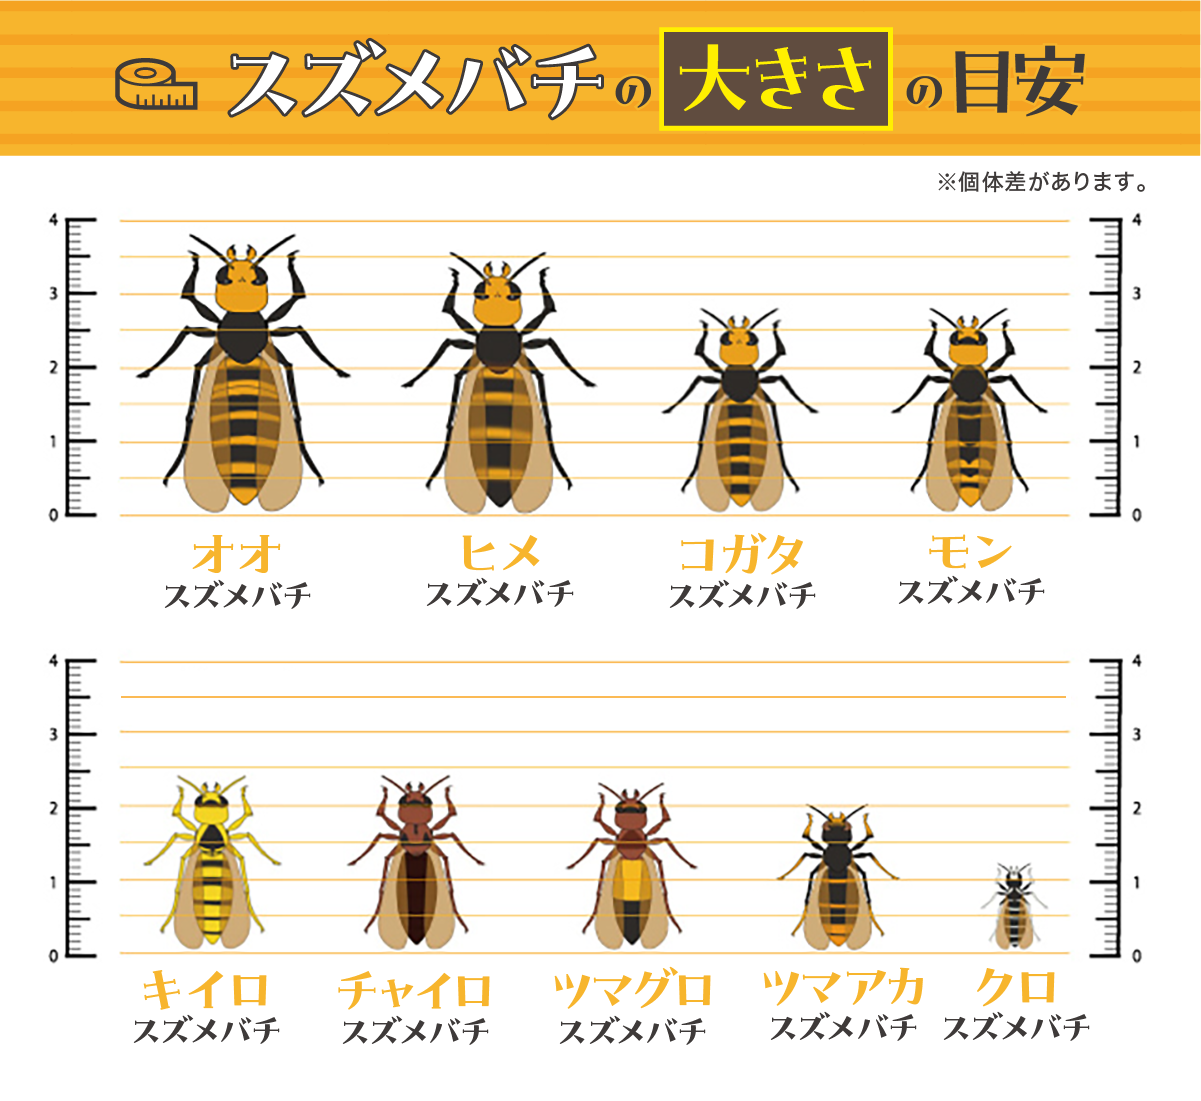 スズメバチの大きさ比較